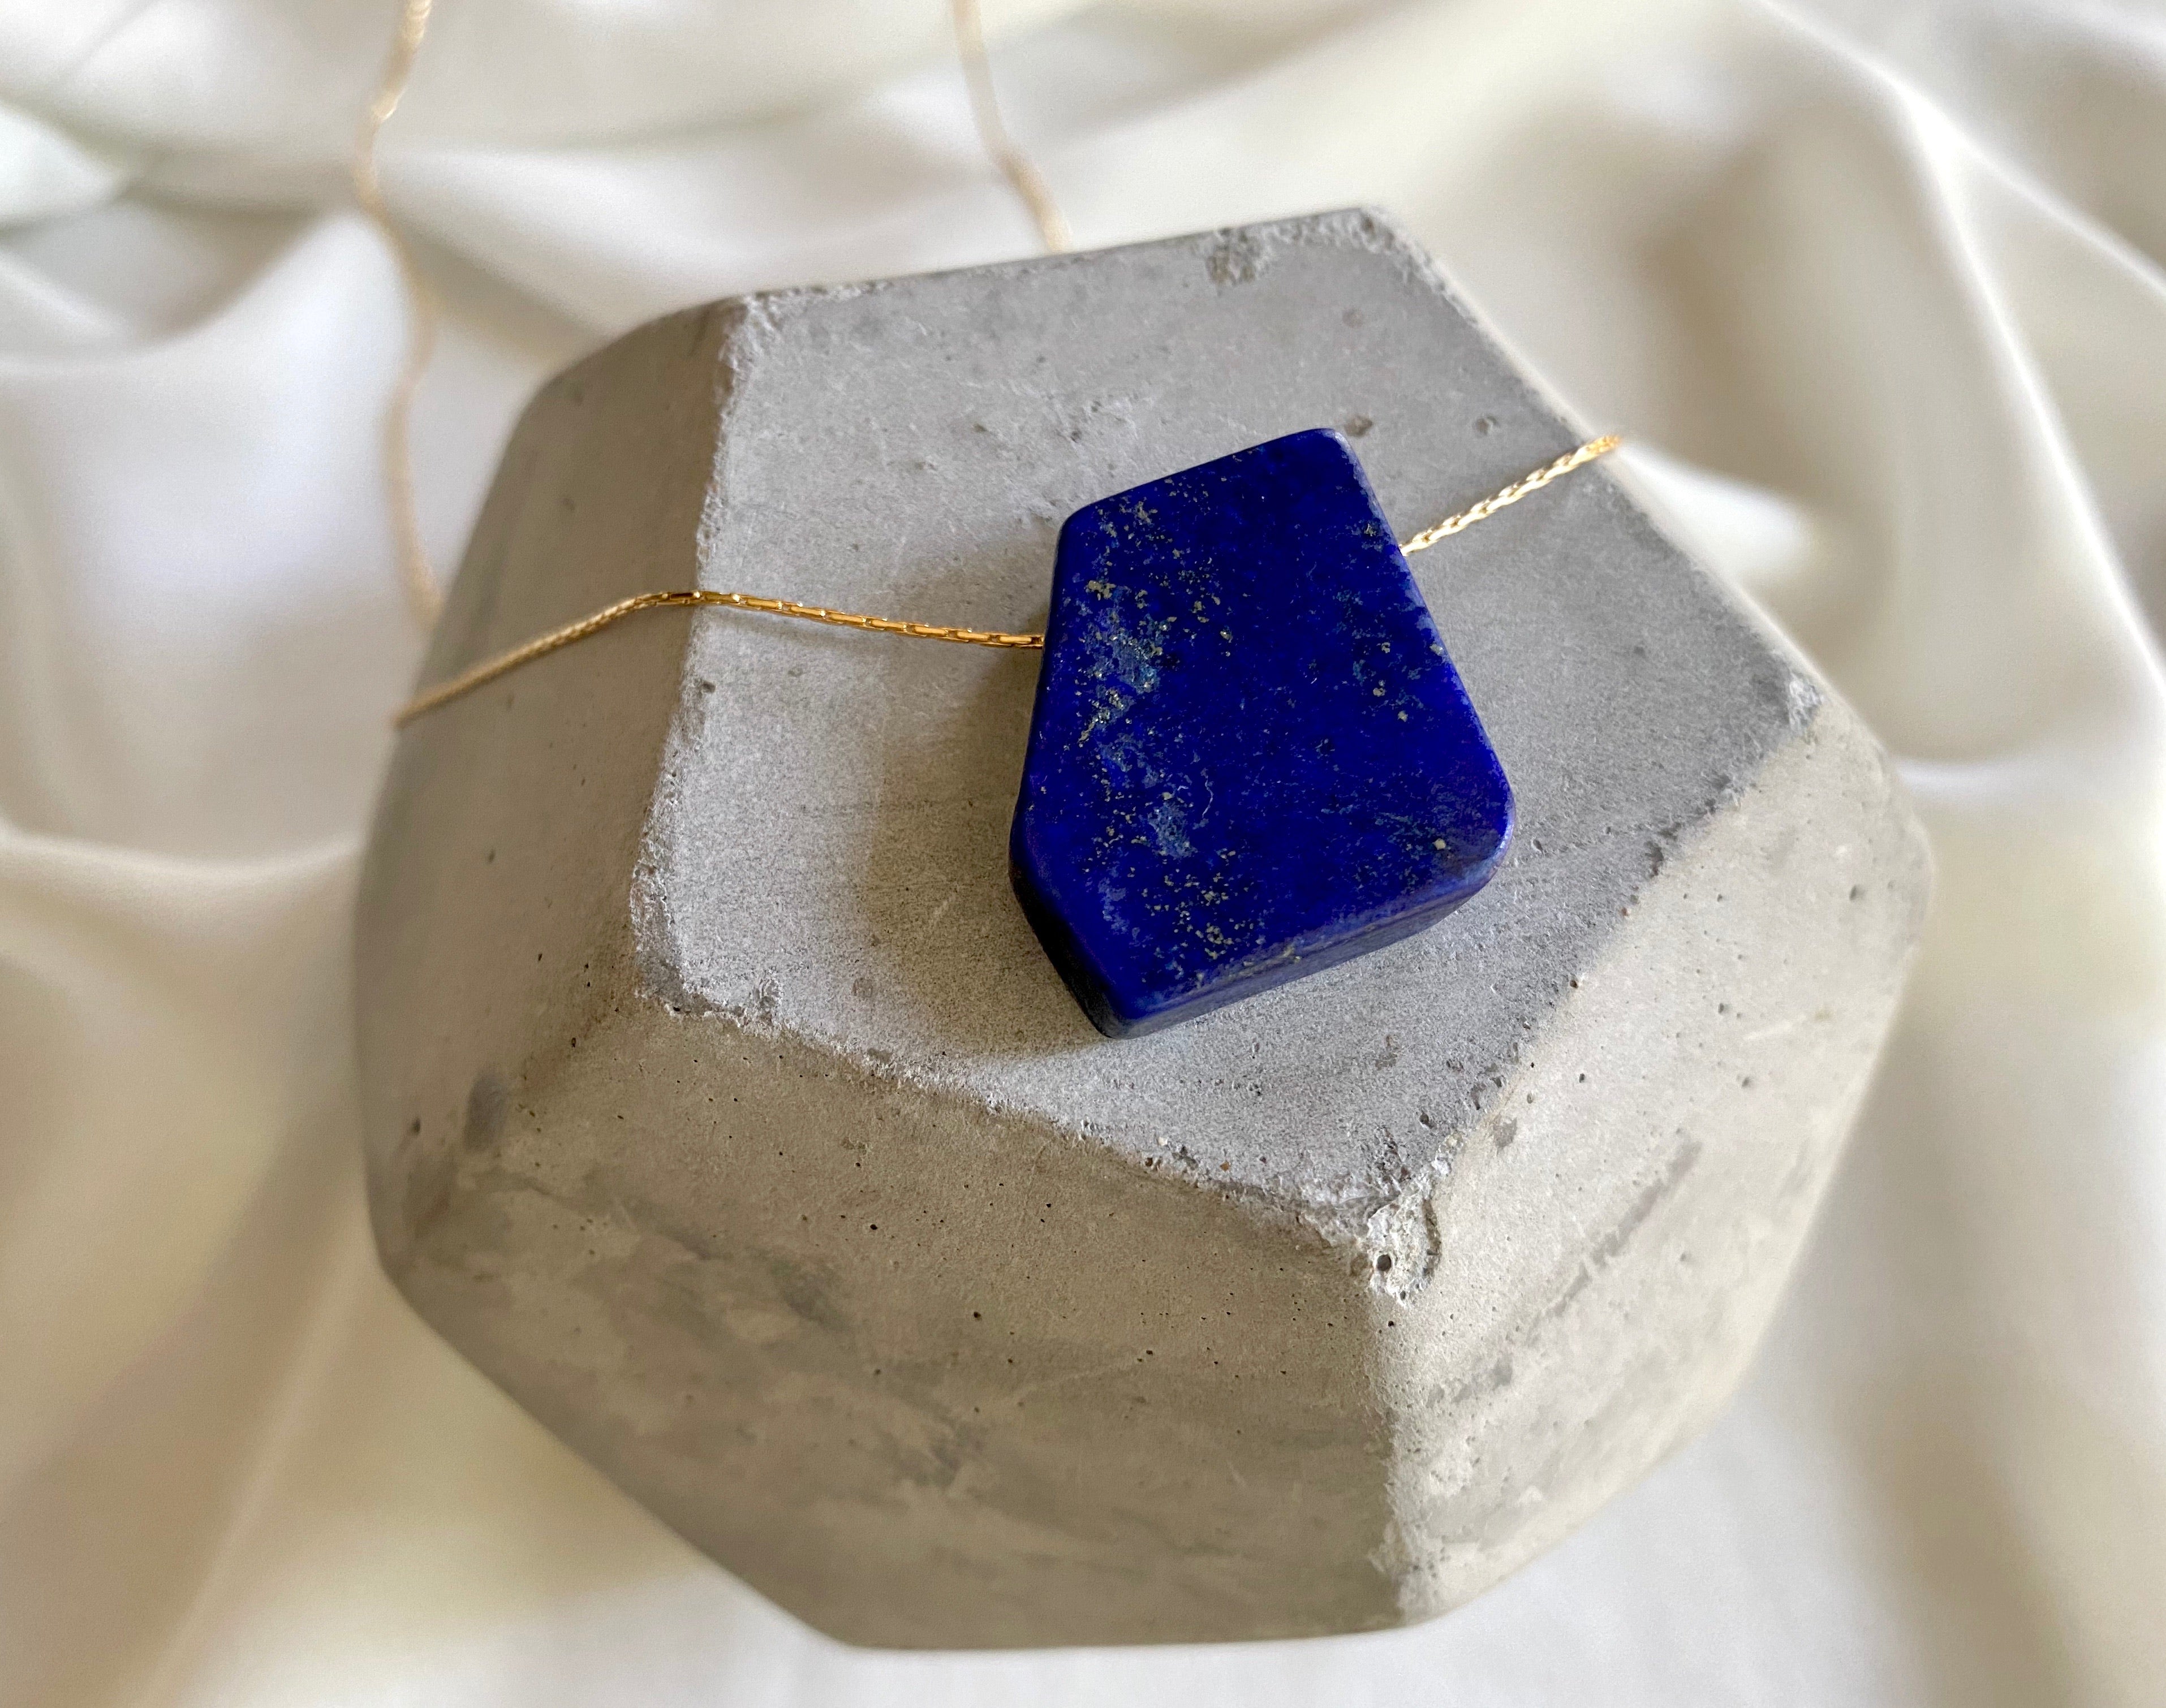 Chunky Lapis Lazuli Floating Pendant Necklace - September Birthstone